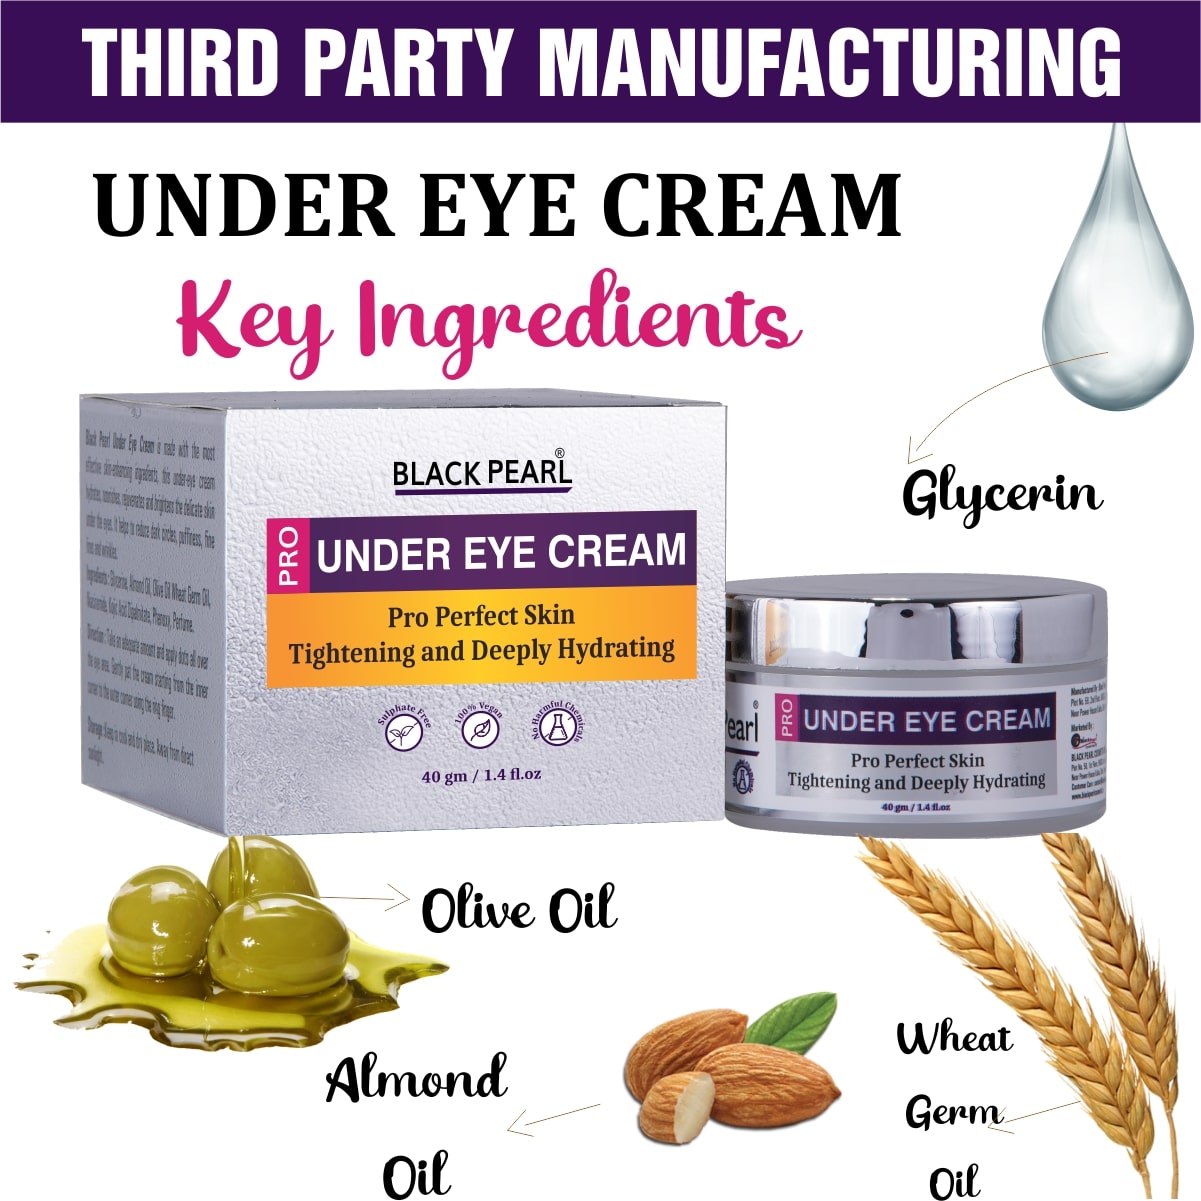 Under Eye Cream Third Party Manufacturing